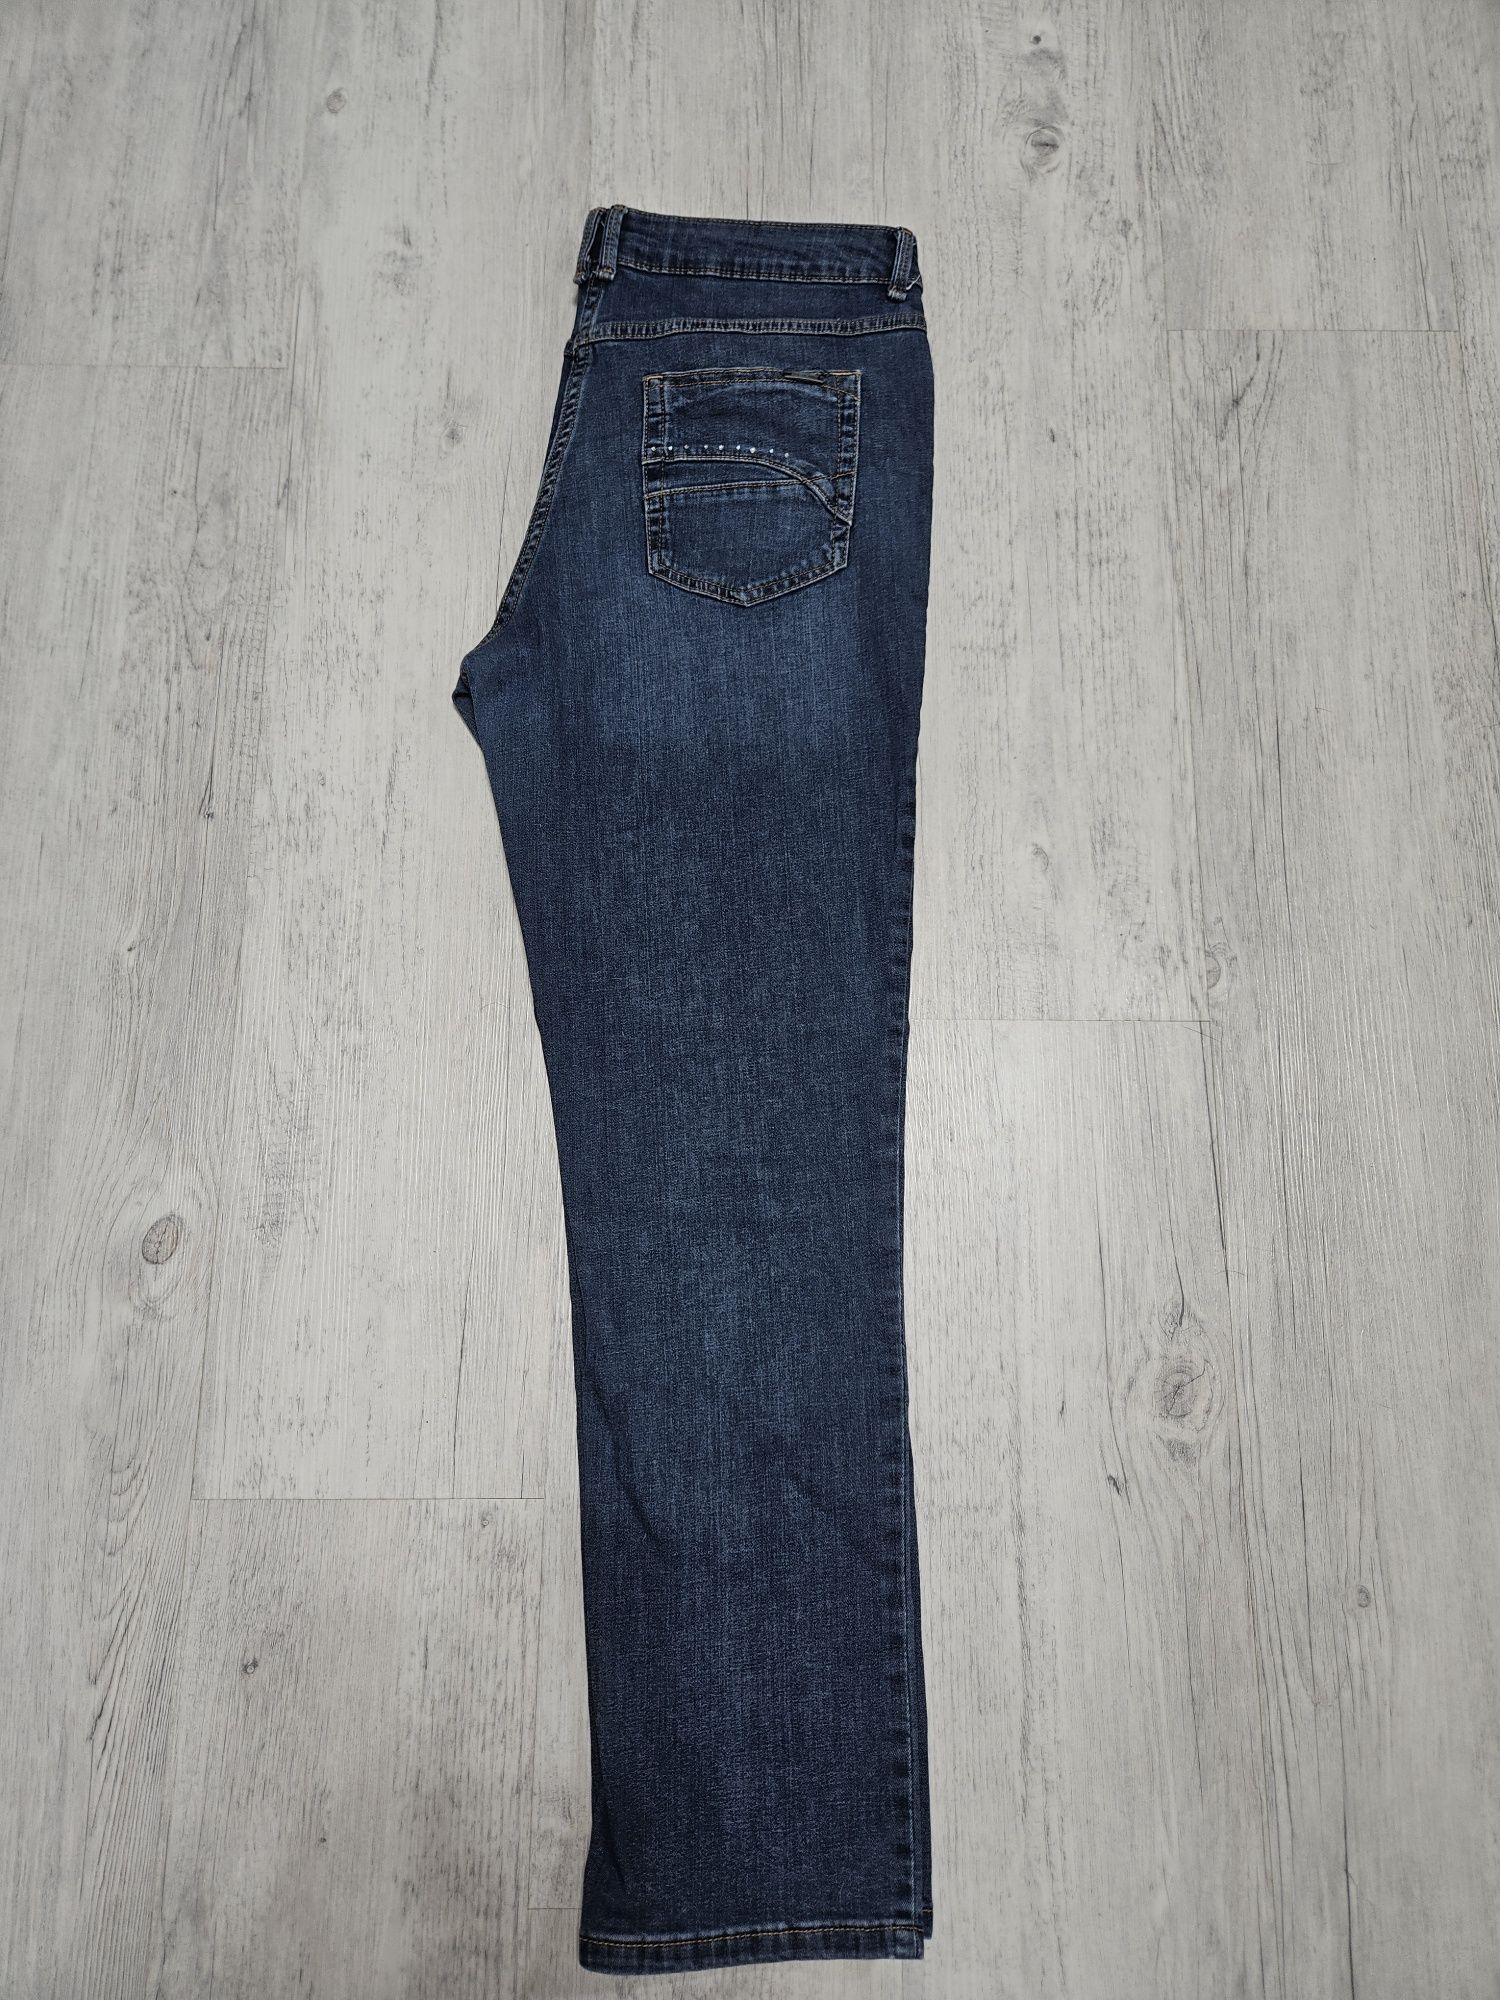 Жіночі  літні джинси 48-50 розм.